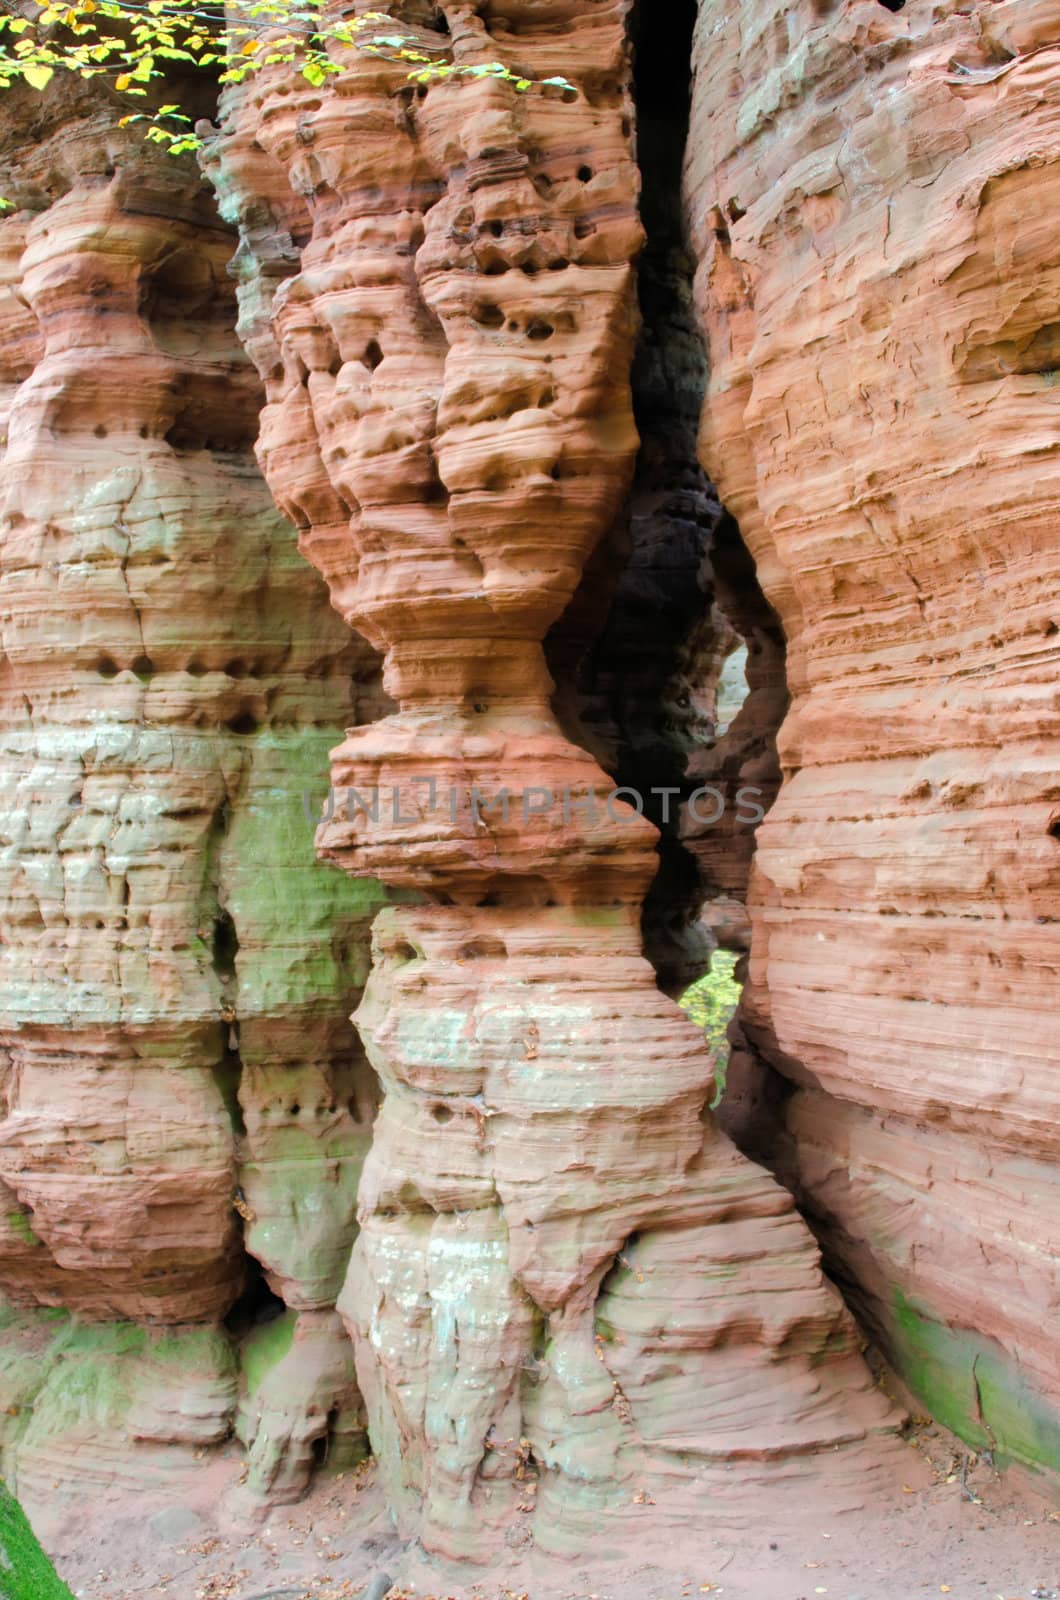 erosion of the sandstone by njaj